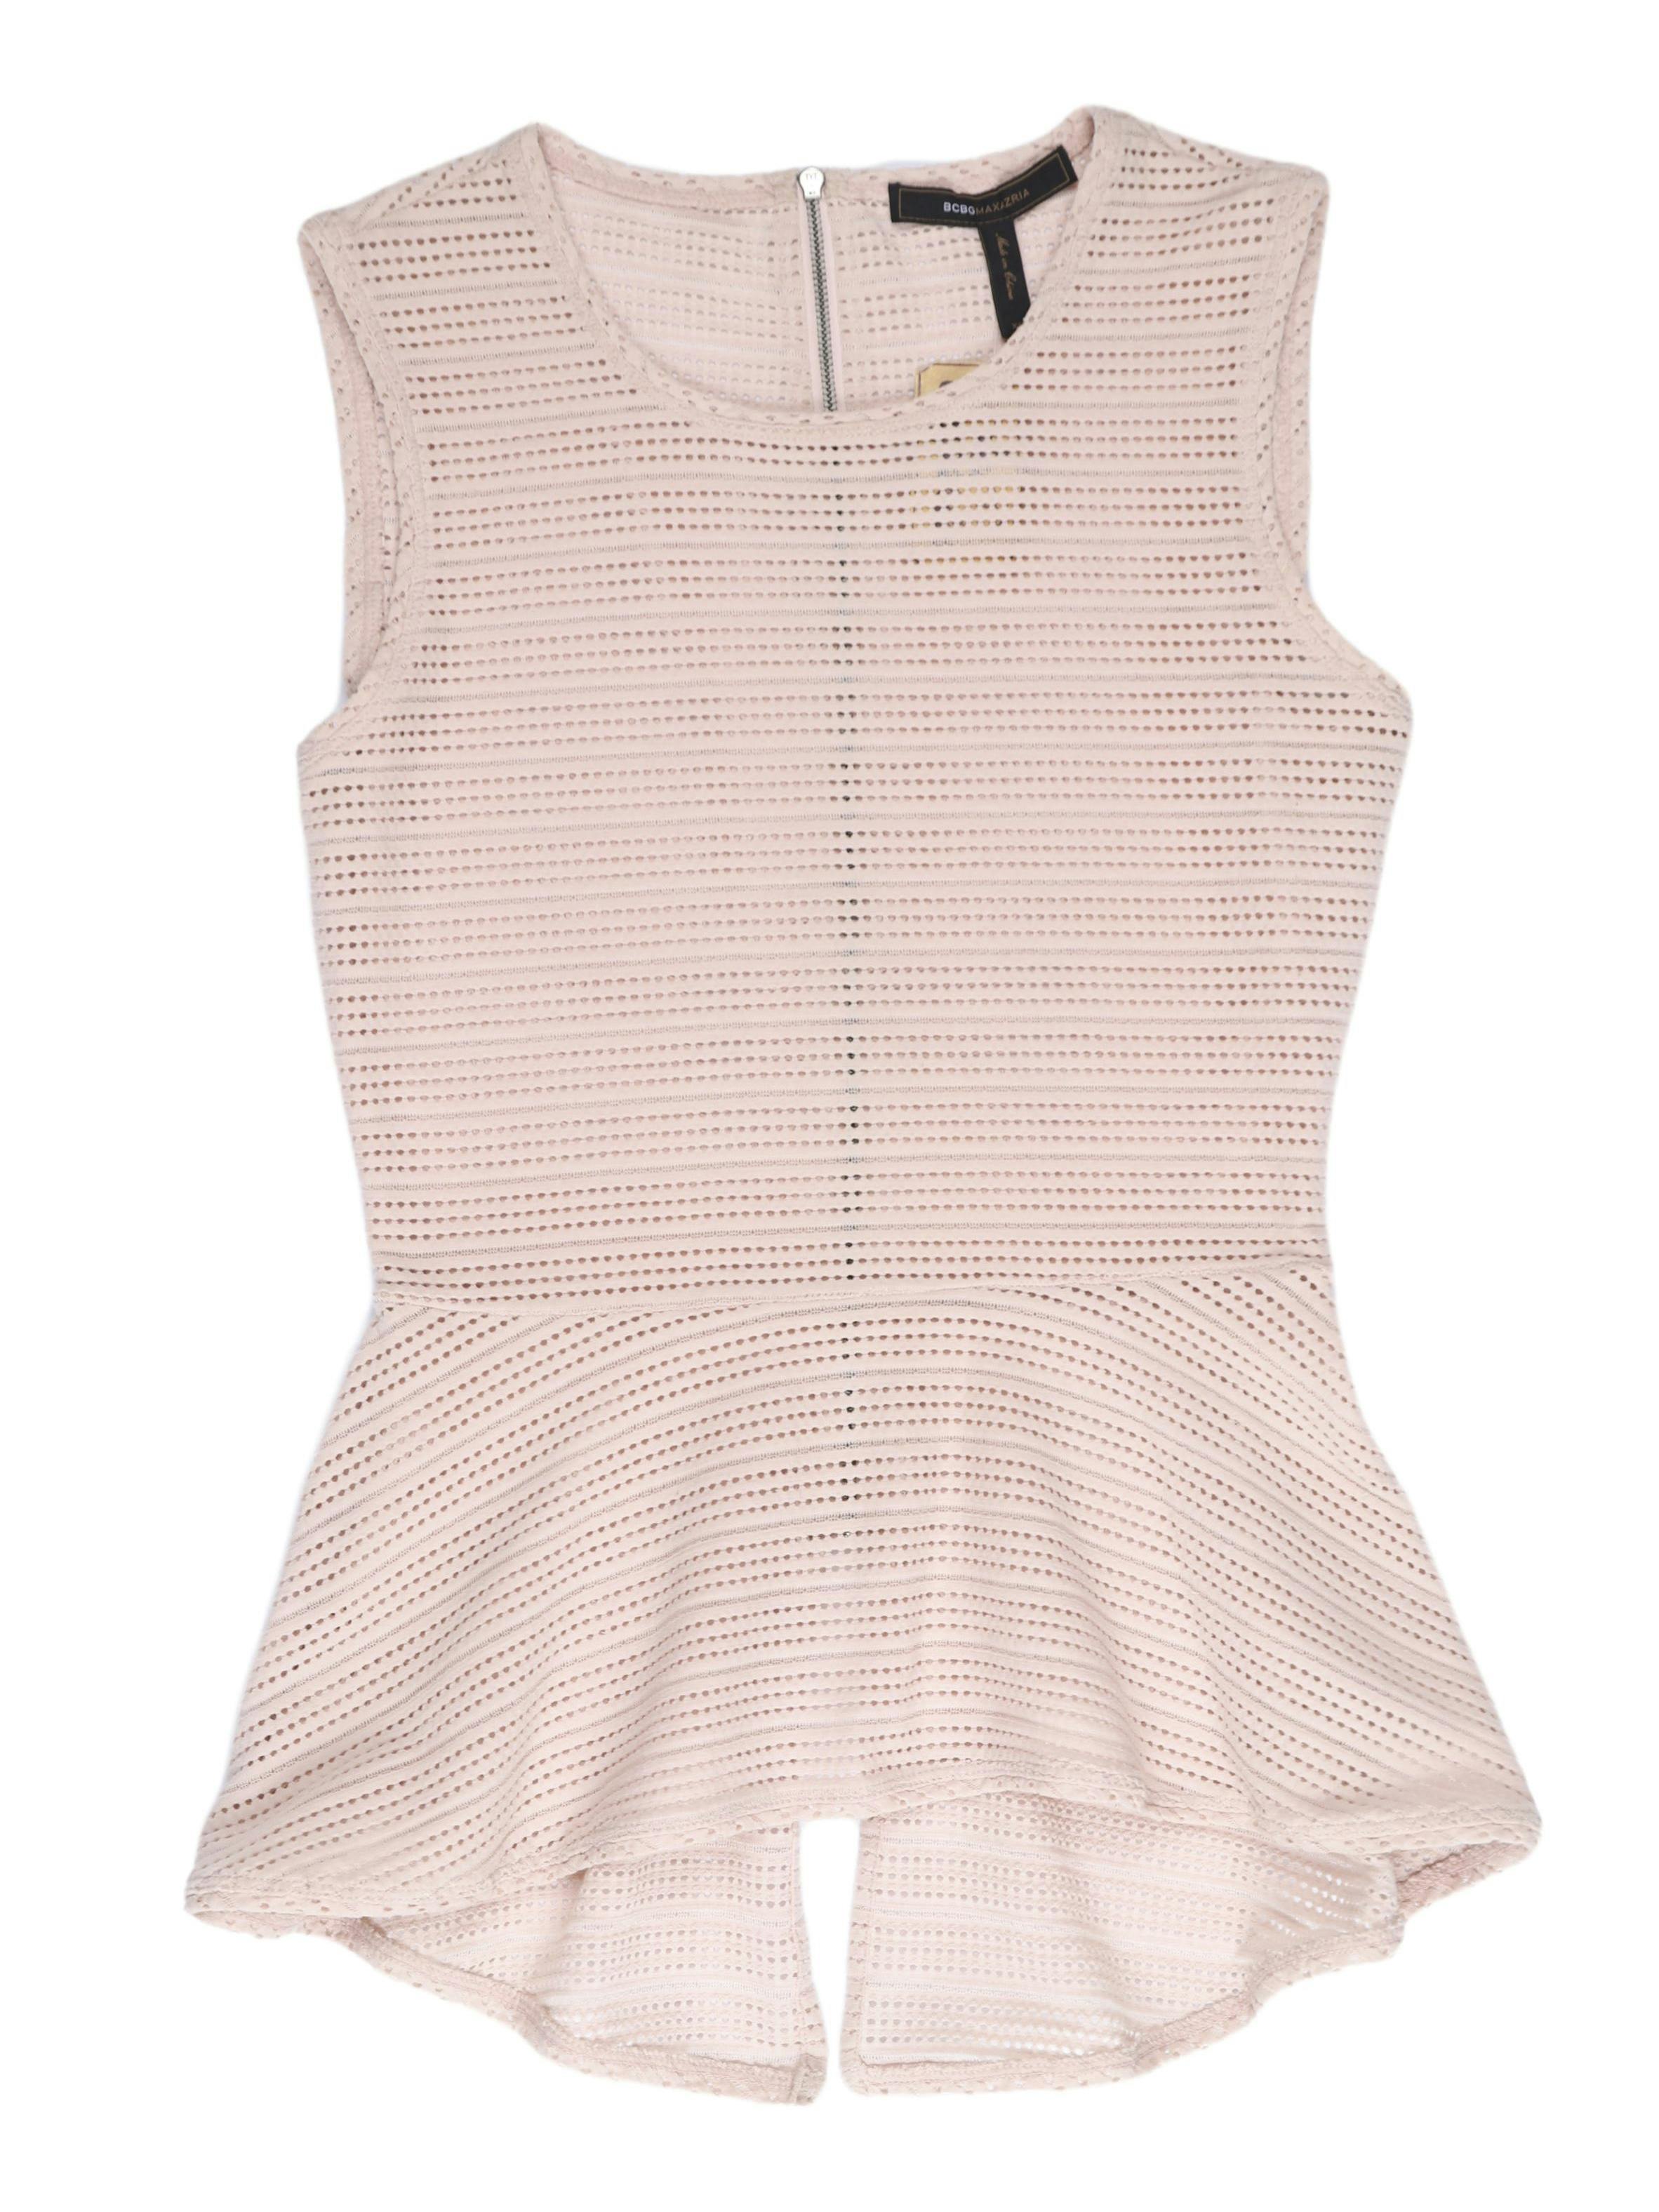 Blusa peplum BCBGMaxazria tela palo rosa calada con cierre en la espalda. Un clásico de la marca ¡Hermosa y sentadora! Precio original S/ 350